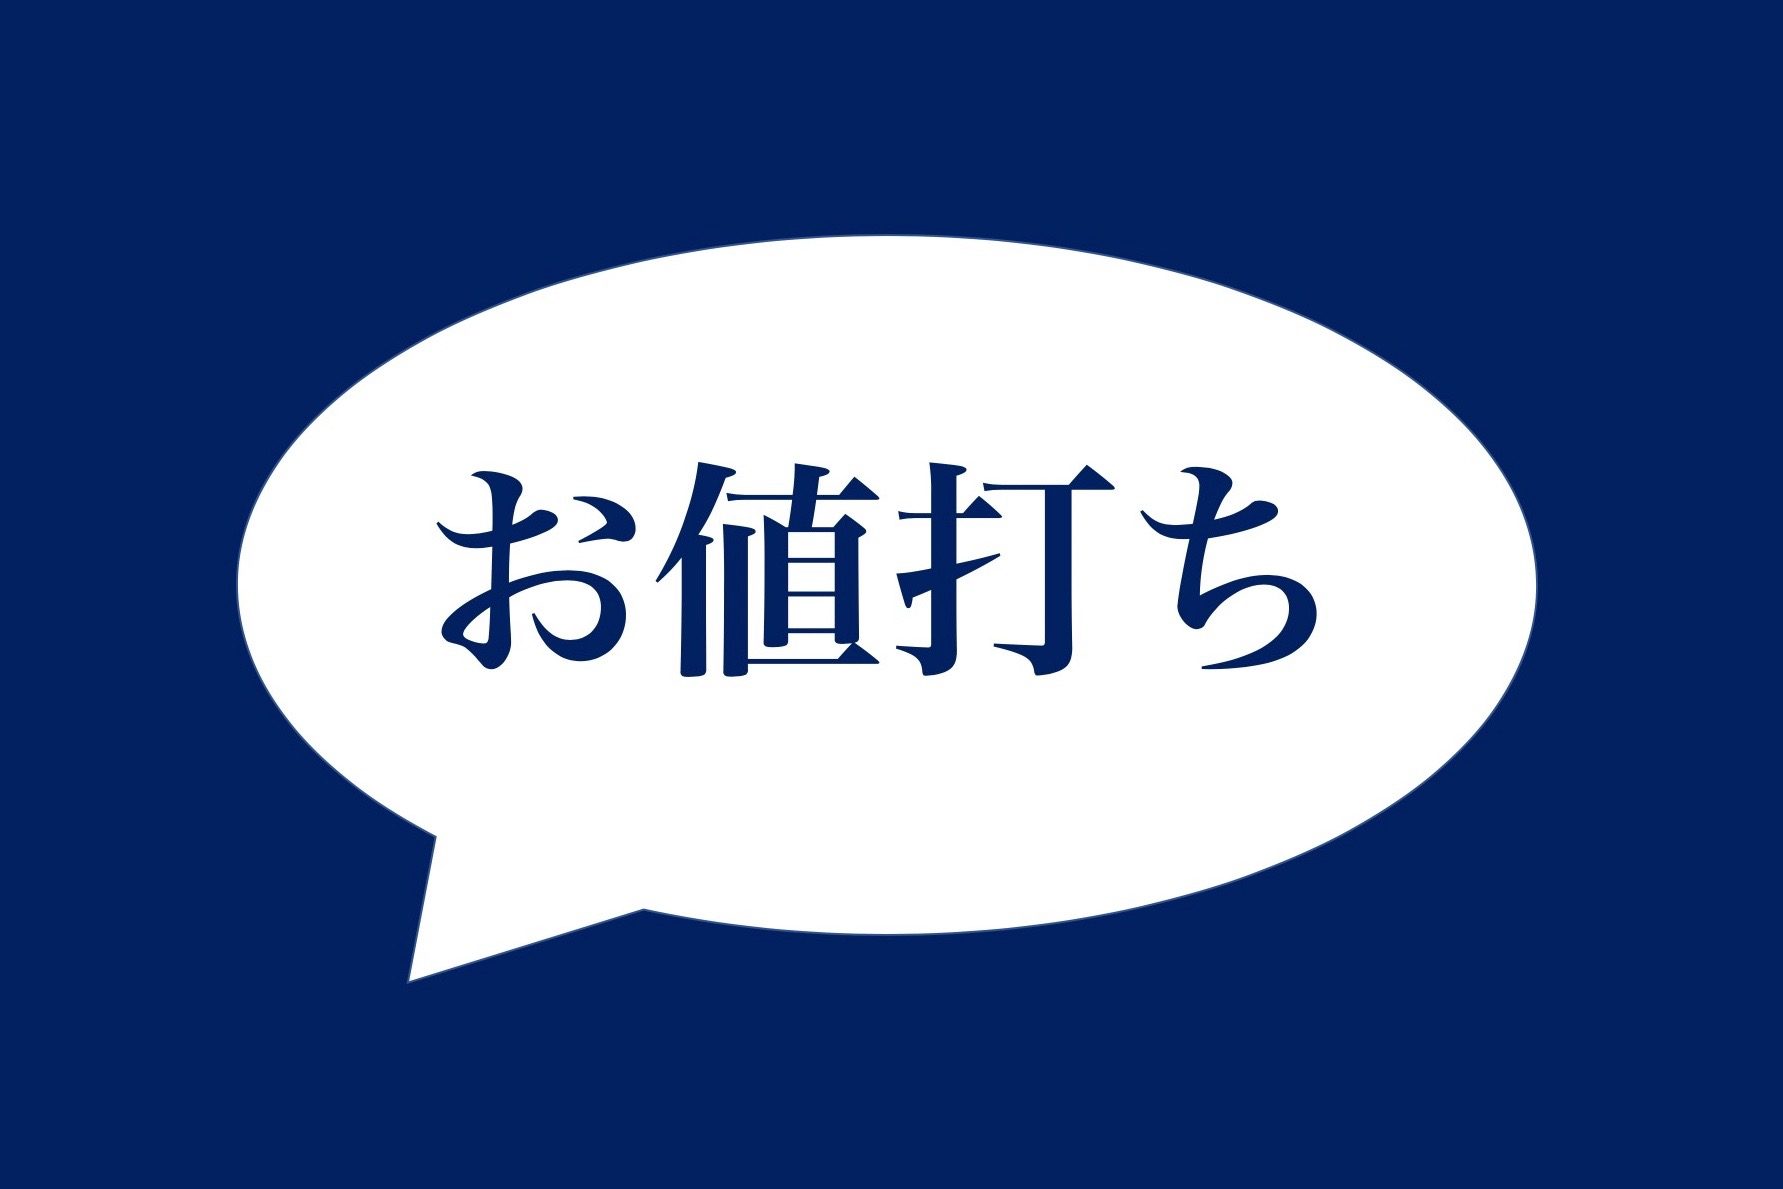 愛知県民 ケンミンshow の放送内容に驚き 全国区の言葉かと ニコニコニュース